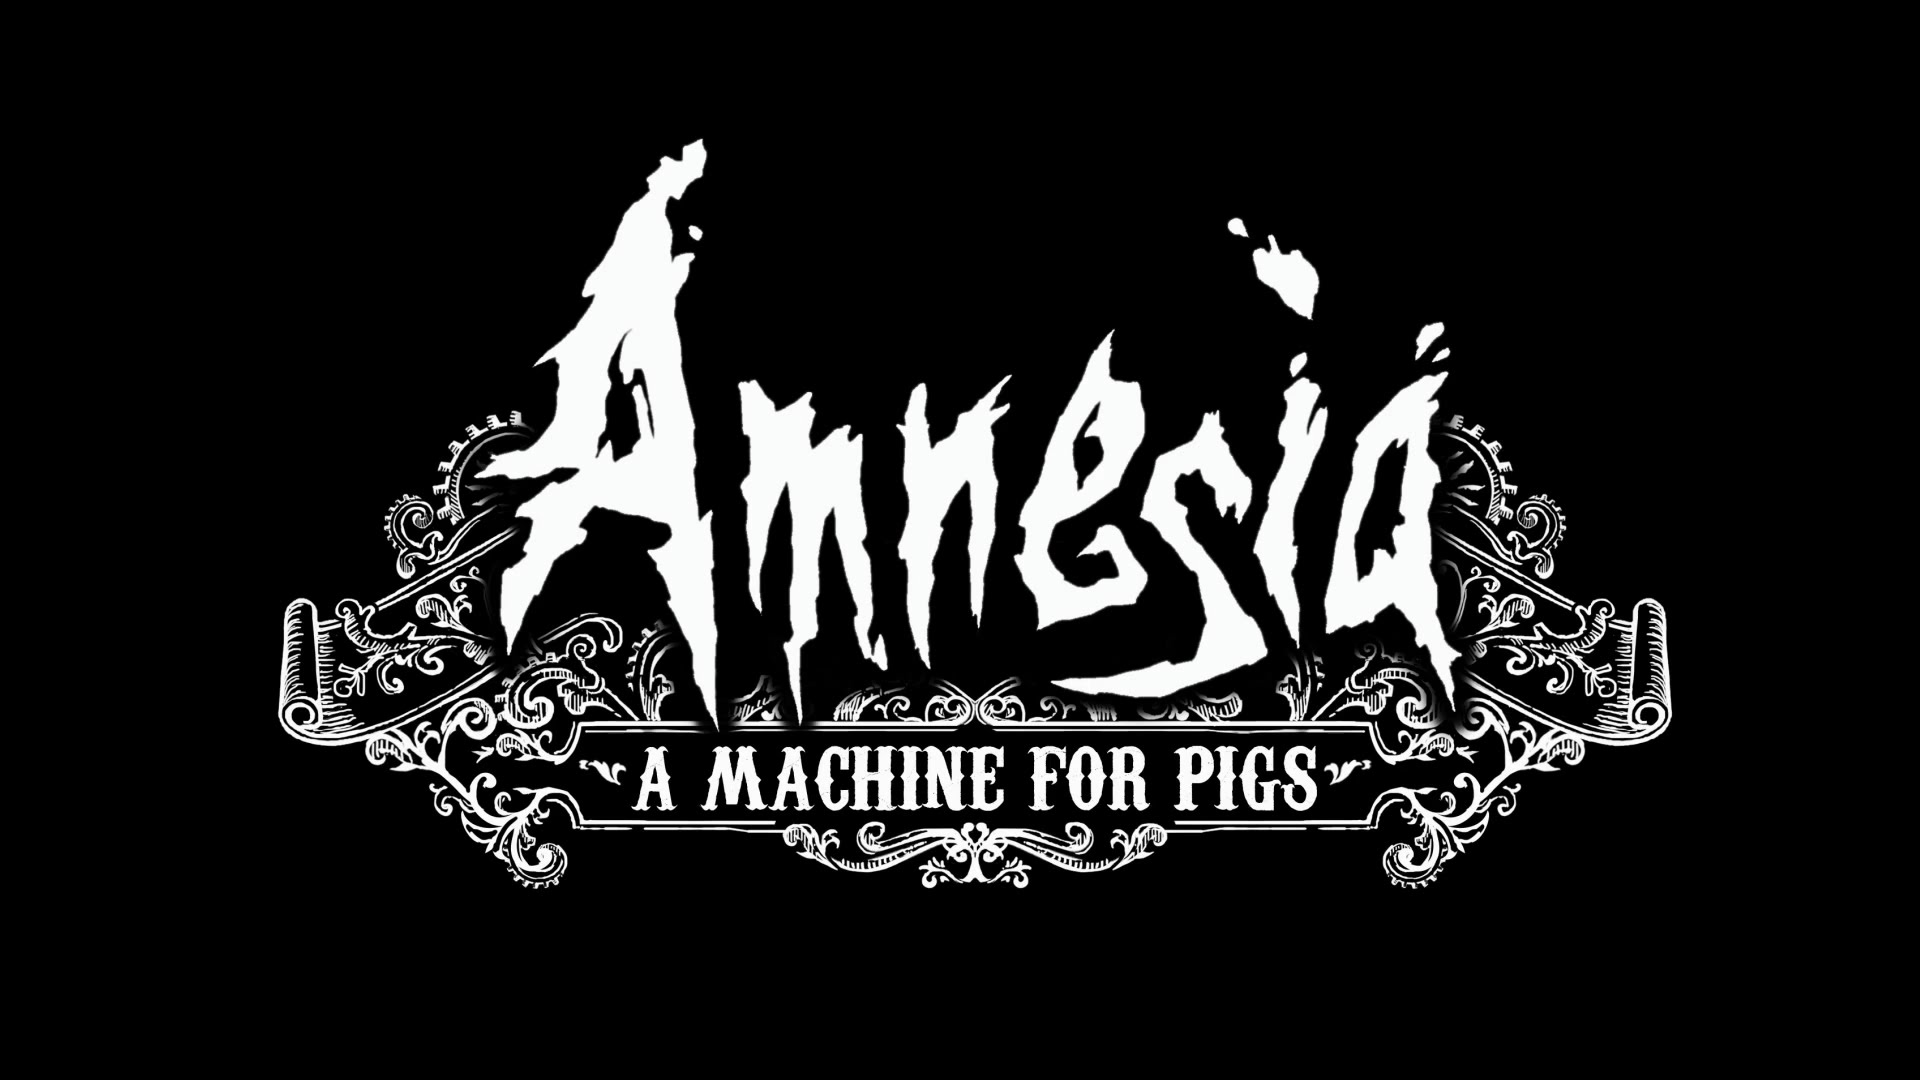 Arriba la tensió. Amnesia: A machine for pigs #16 de Xavalma